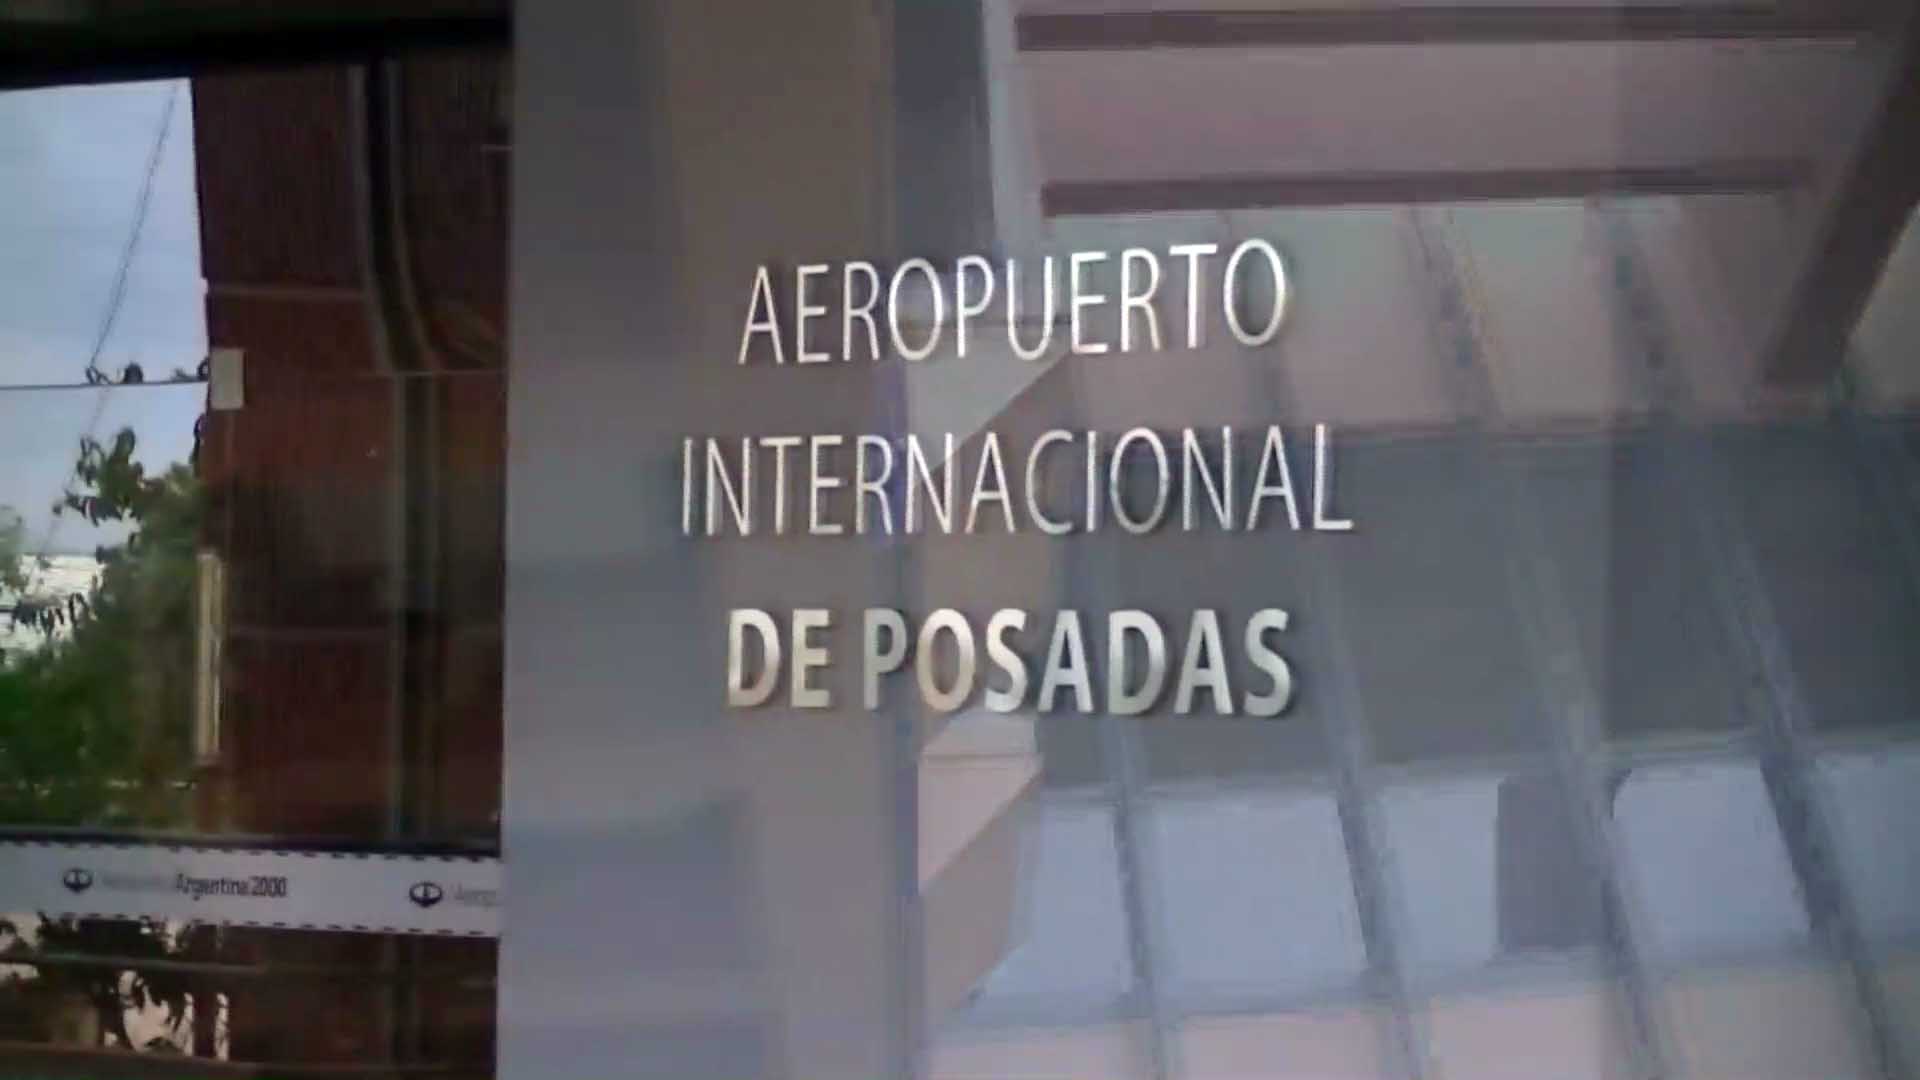 El aeropuerto de Posadas contará con nuevos instrumentos de navegación  